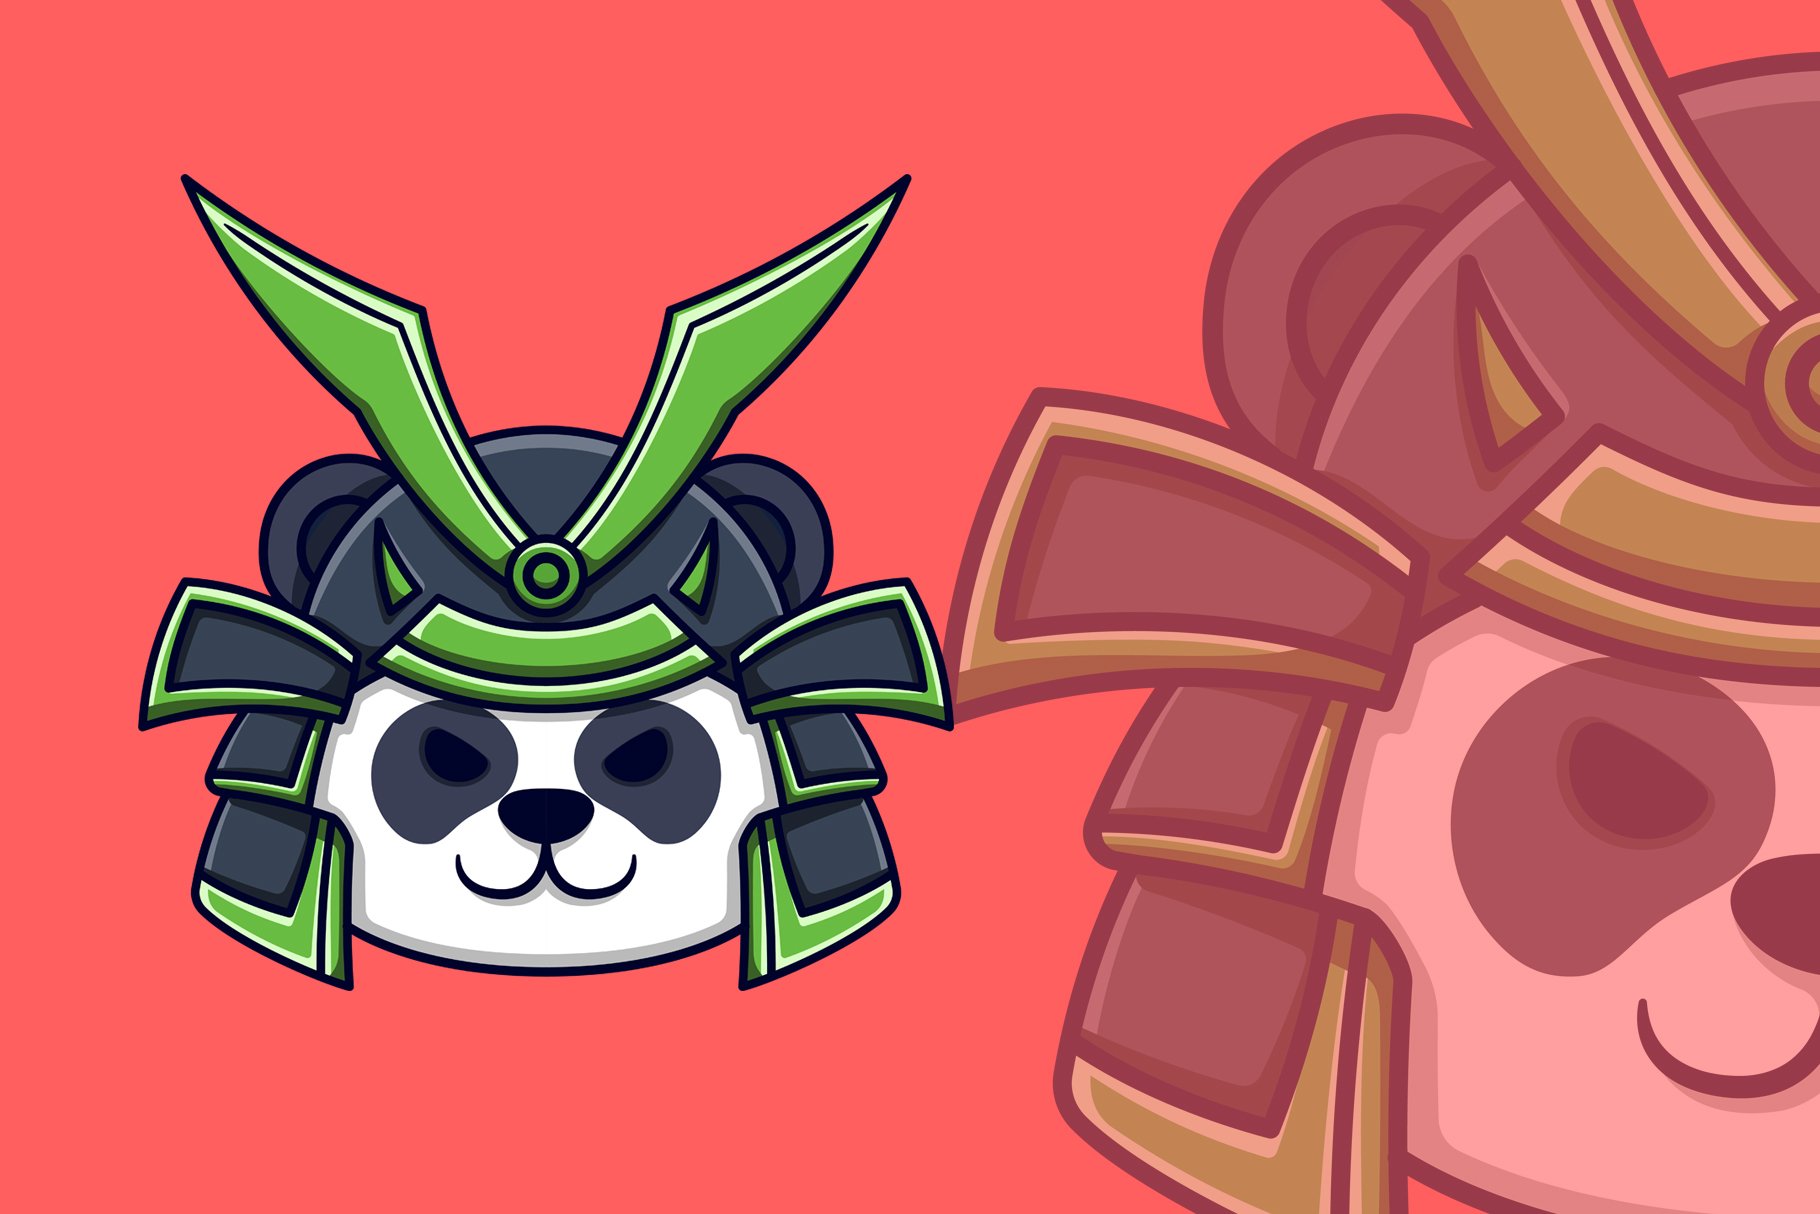 Samurai Panda Head Cartoon cover image.